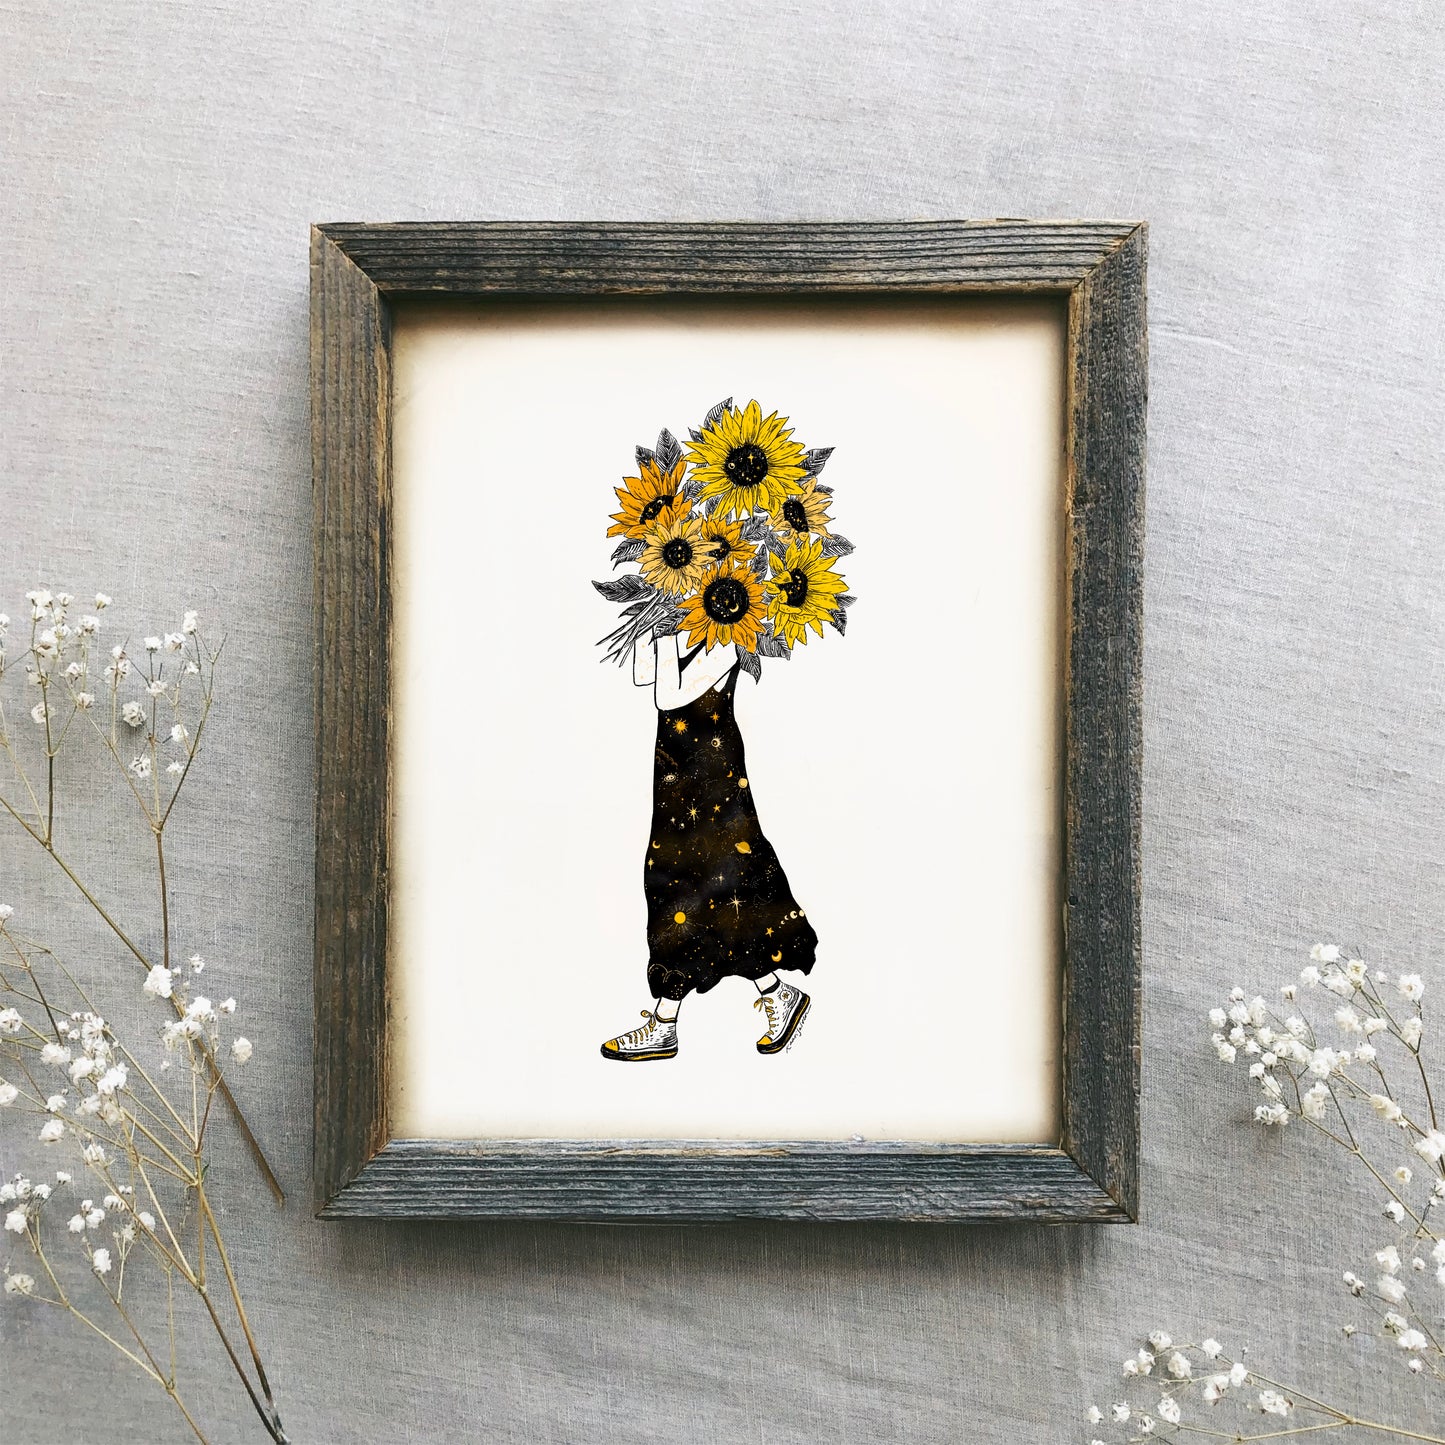 Celestial Sunflower Bouquet Art Print